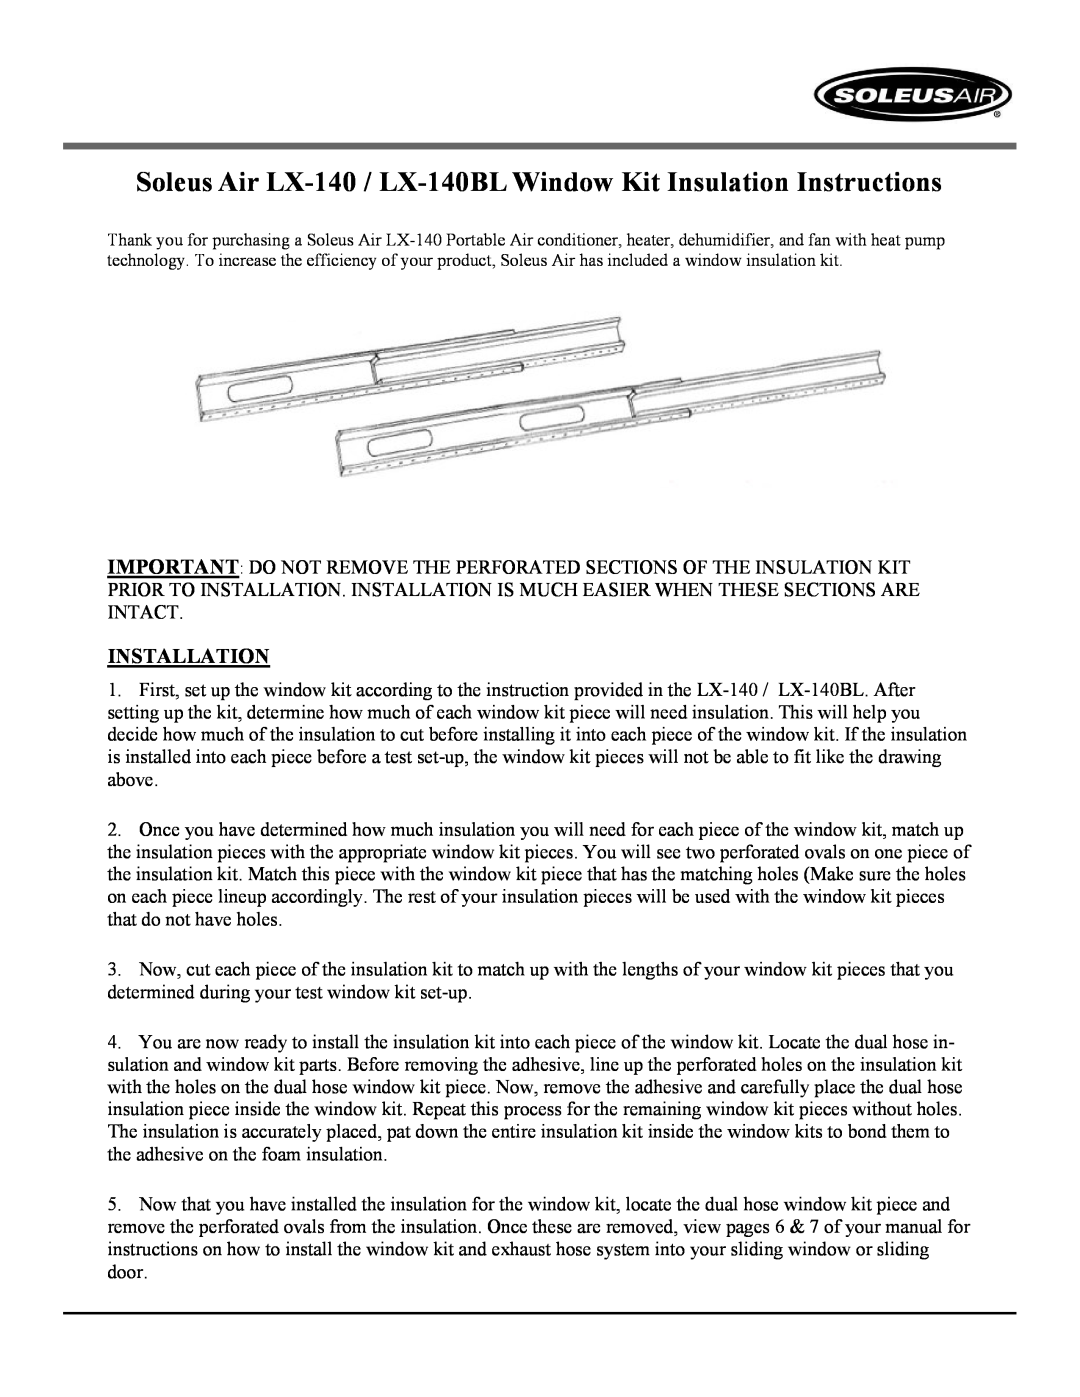 Soleus Air LX-140BL operating instructions Model No. LX-140, 14,000 BTU Portable Air Conditioner, 12,000 BTU Heat Pump 